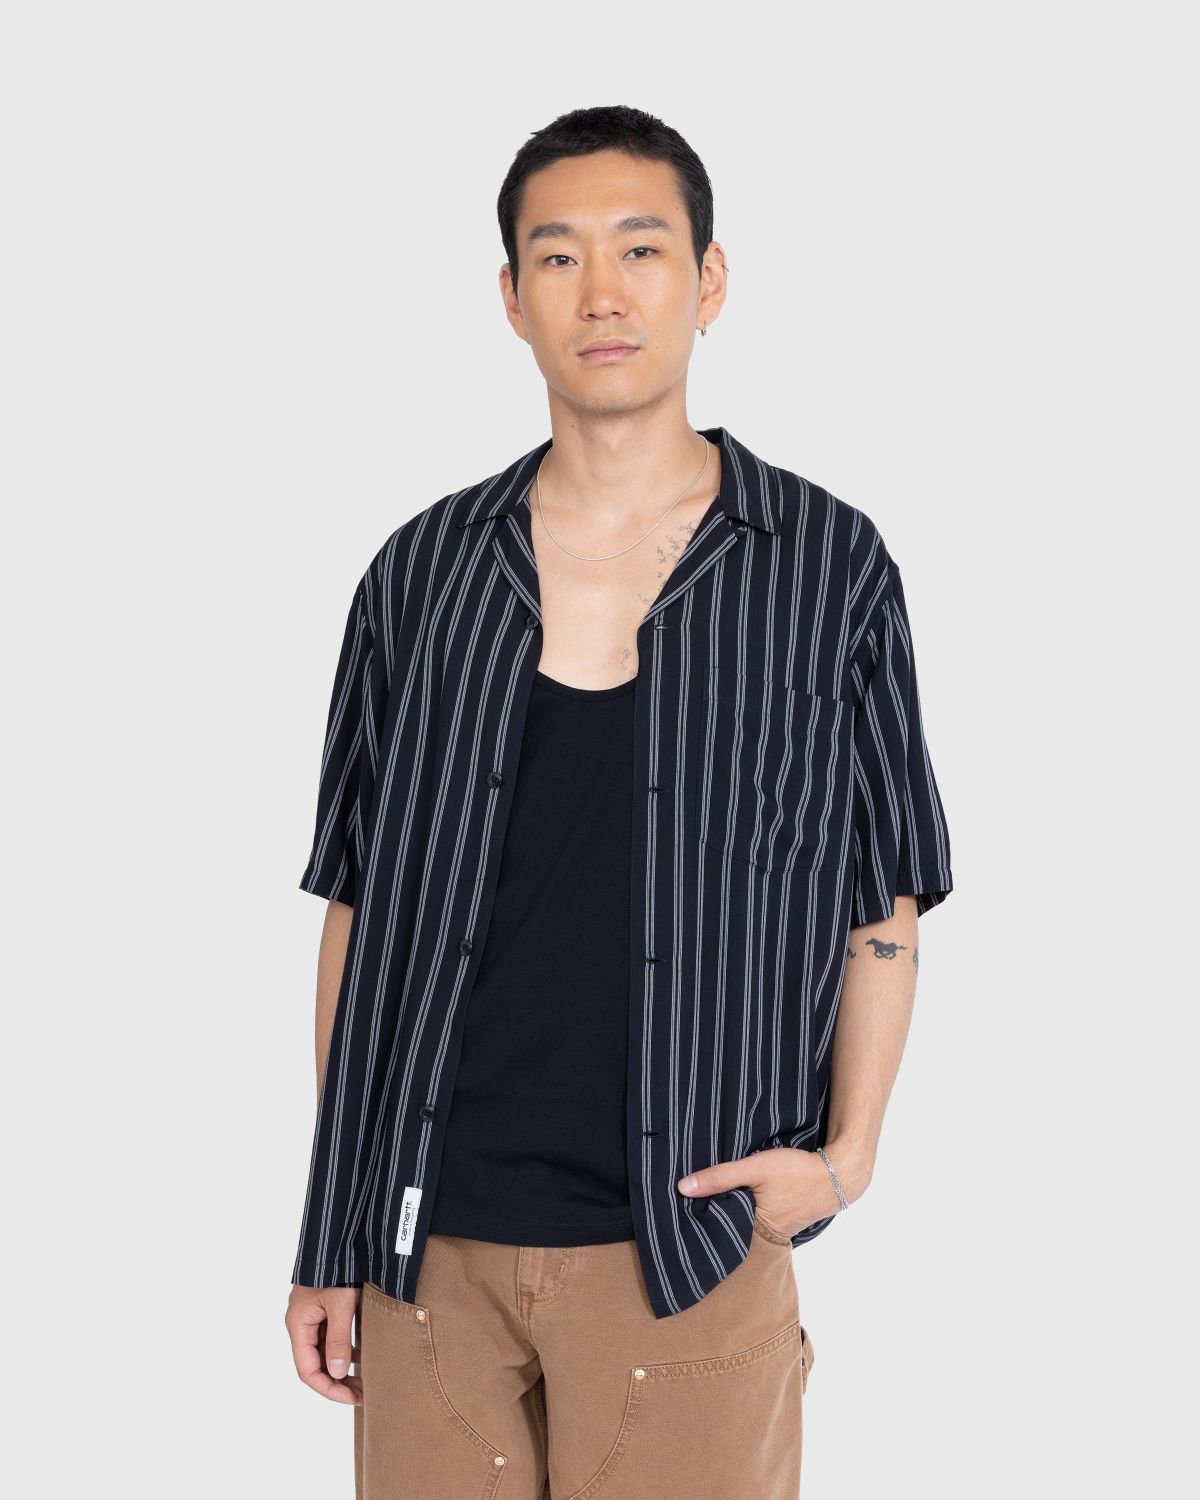 Carhartt WIP – Reyes Stripe Shirt Black - Shirts - Black - Image 2